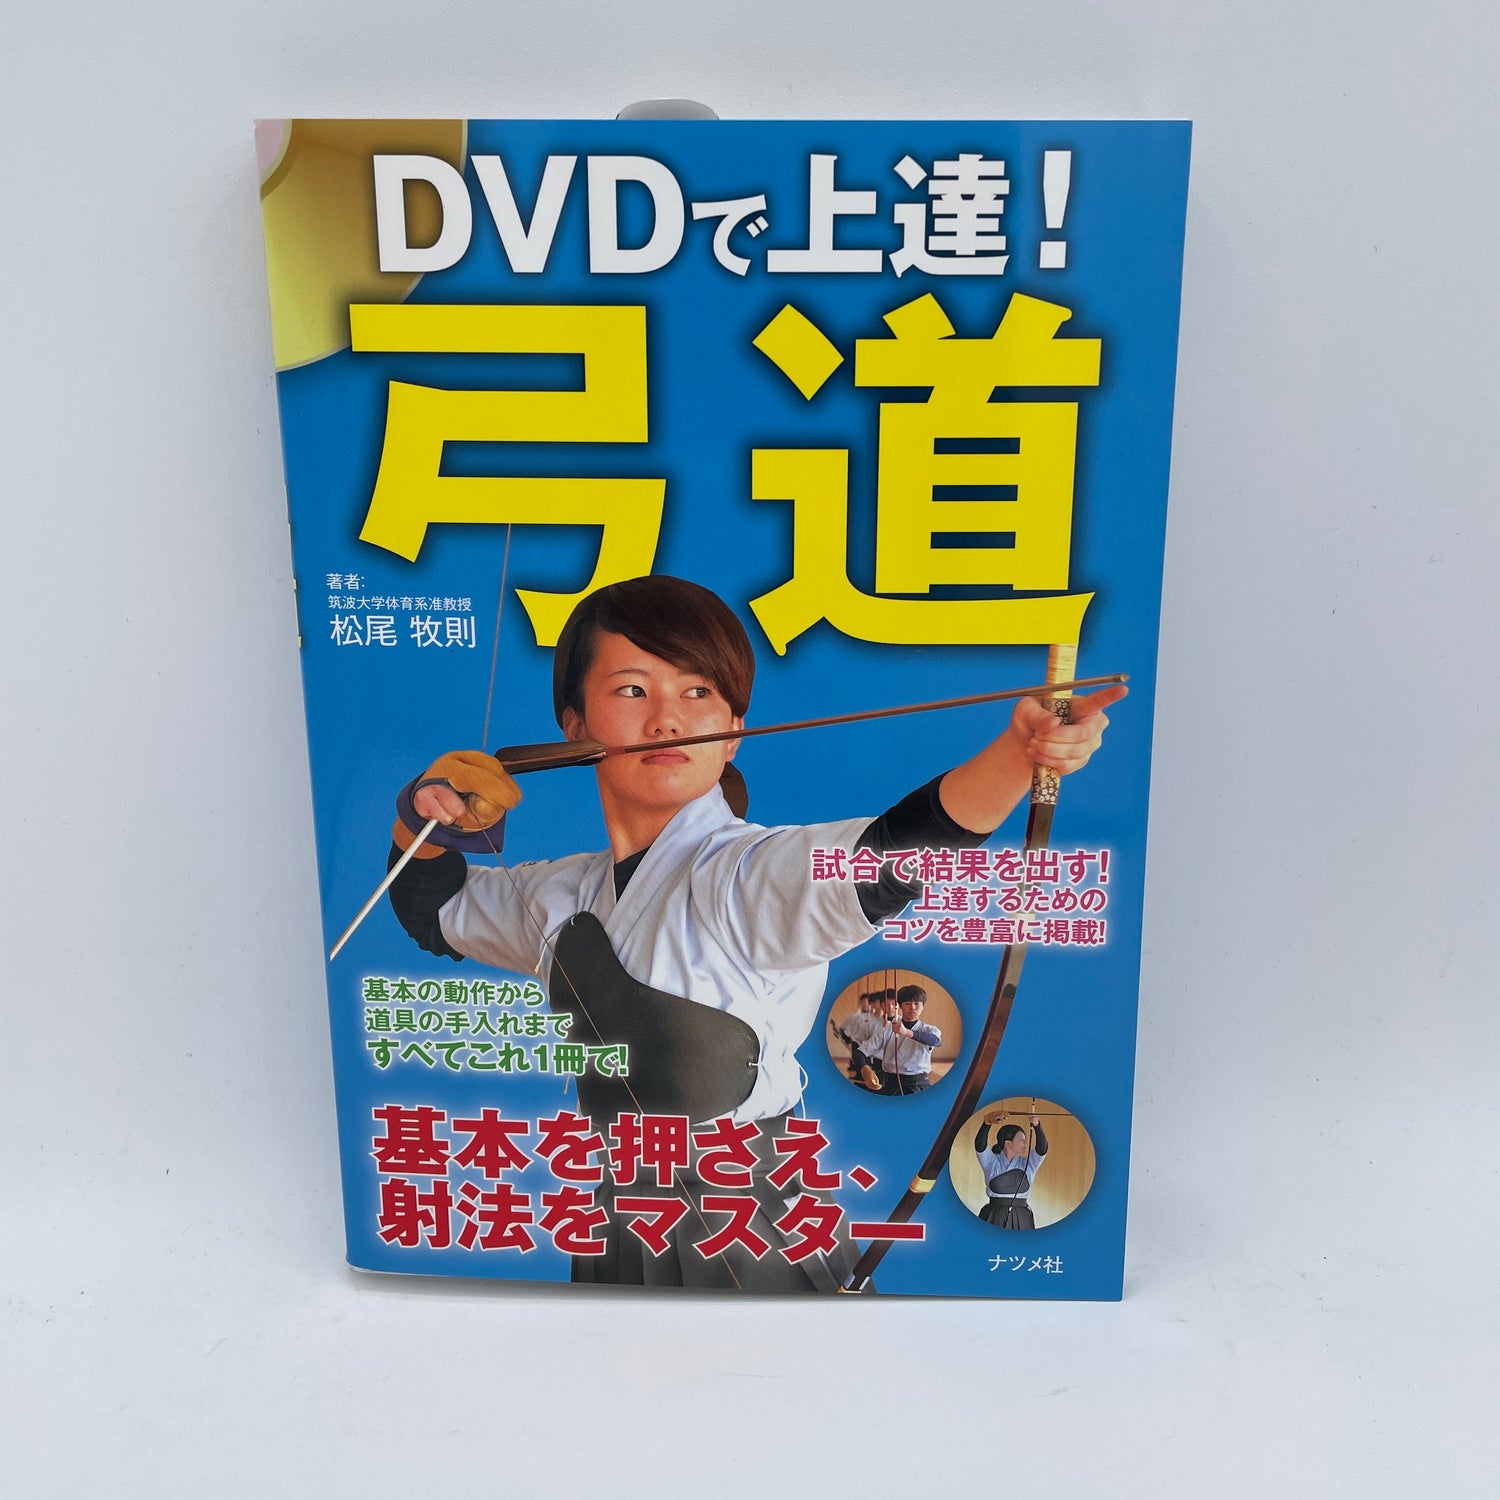 Improve Your Kyudo Book & DVD by Makinori Matsuo